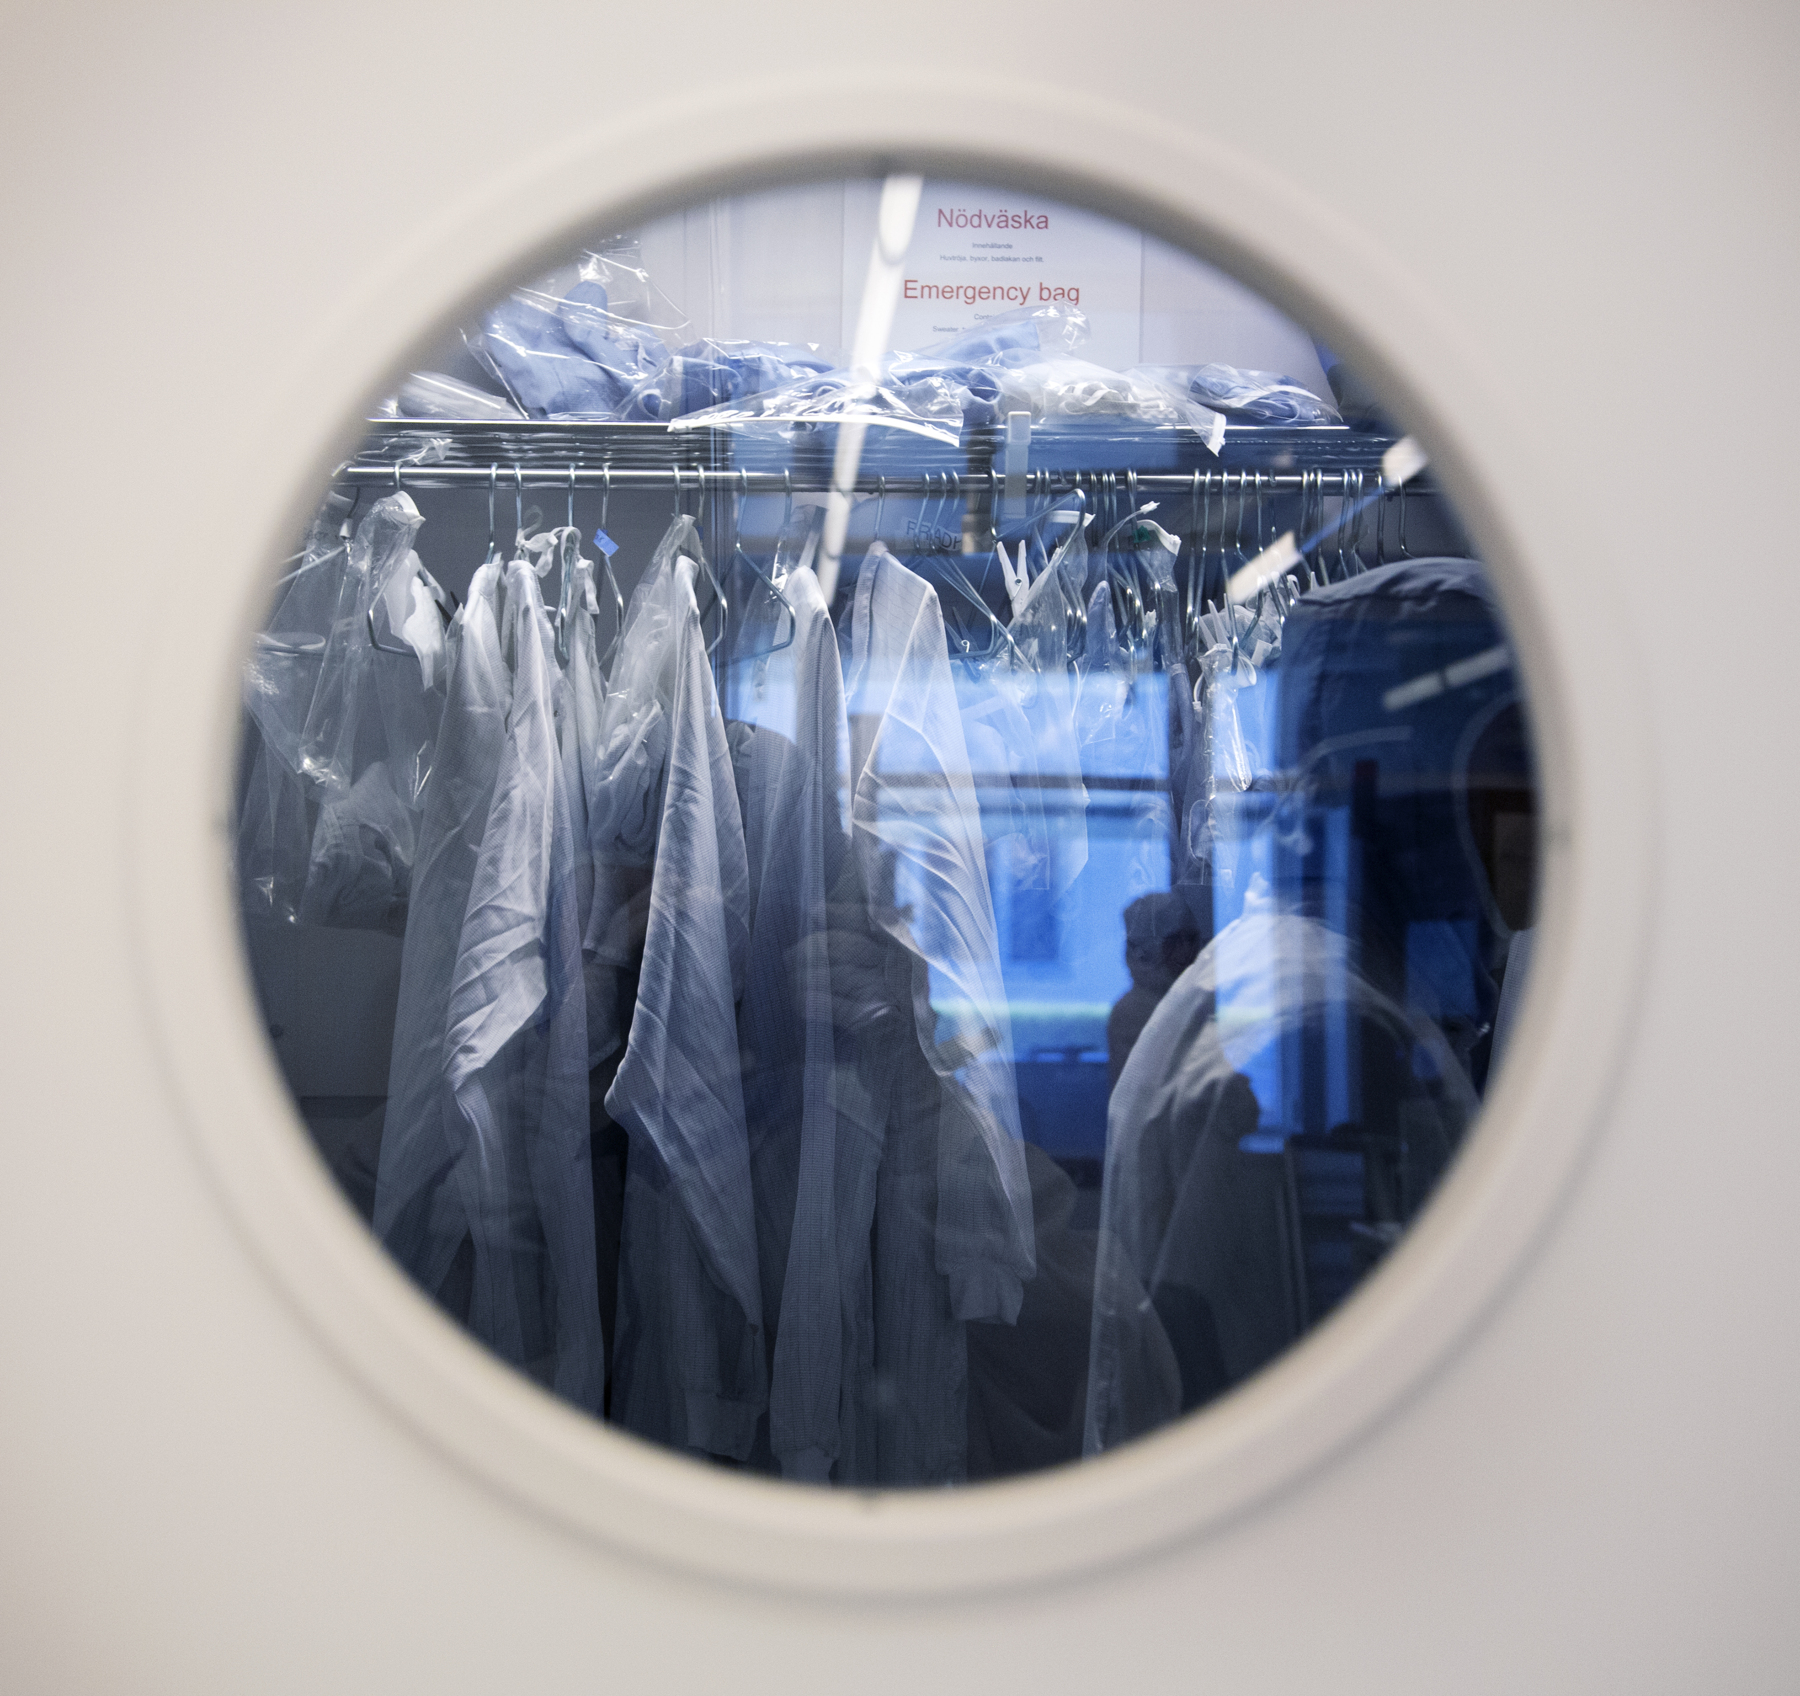 Genom runt fönster i vit dörr syns labbrockar hänga, i ett blått ljus. Foto.